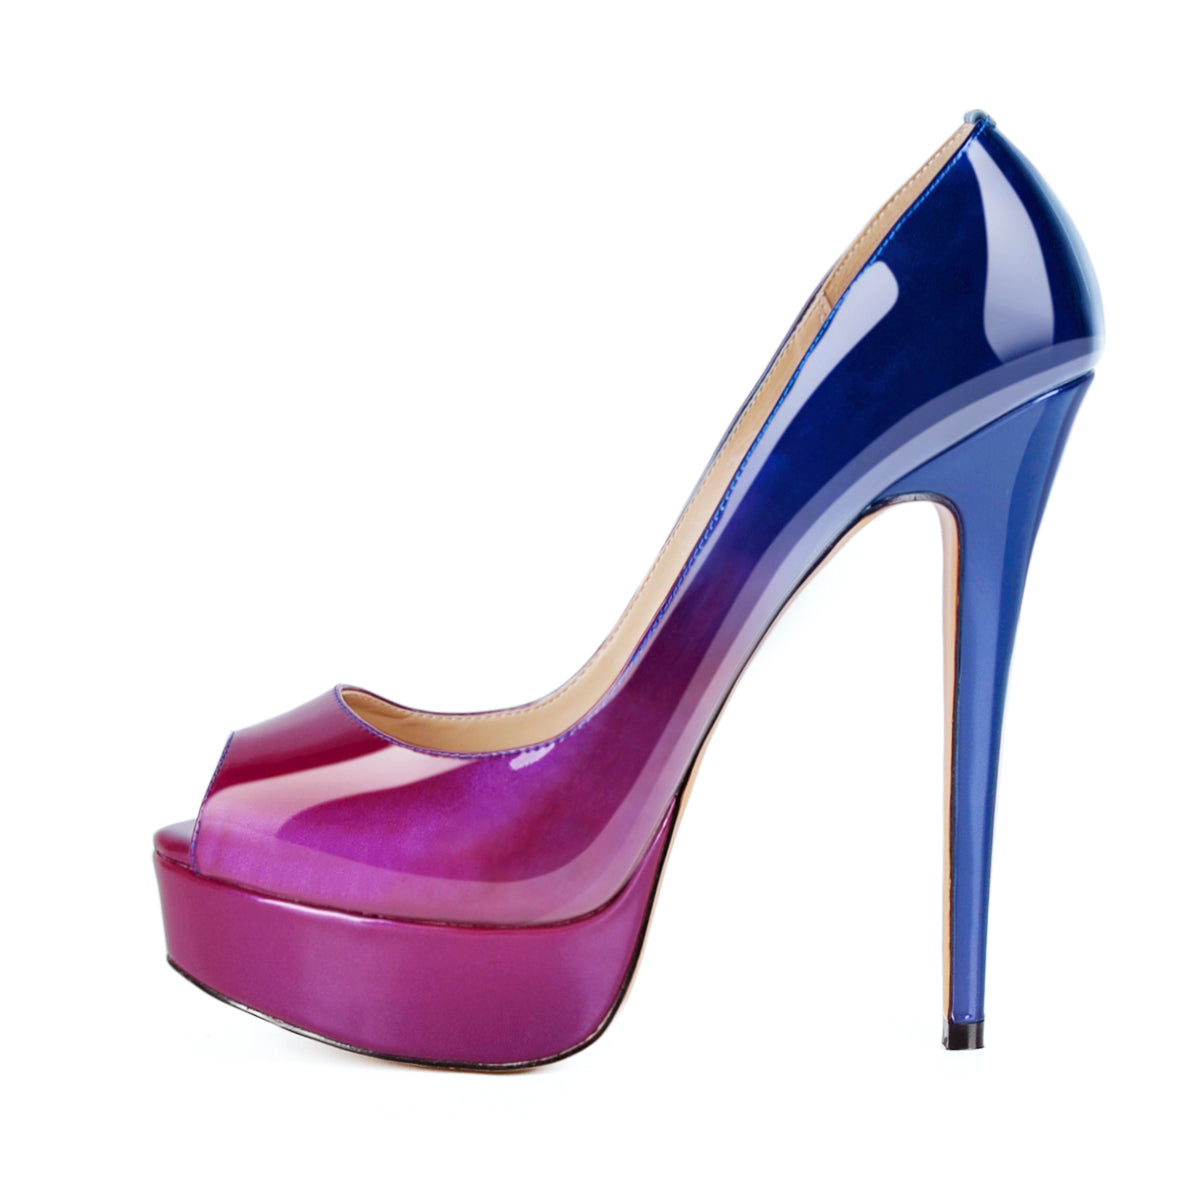 purple blue heels